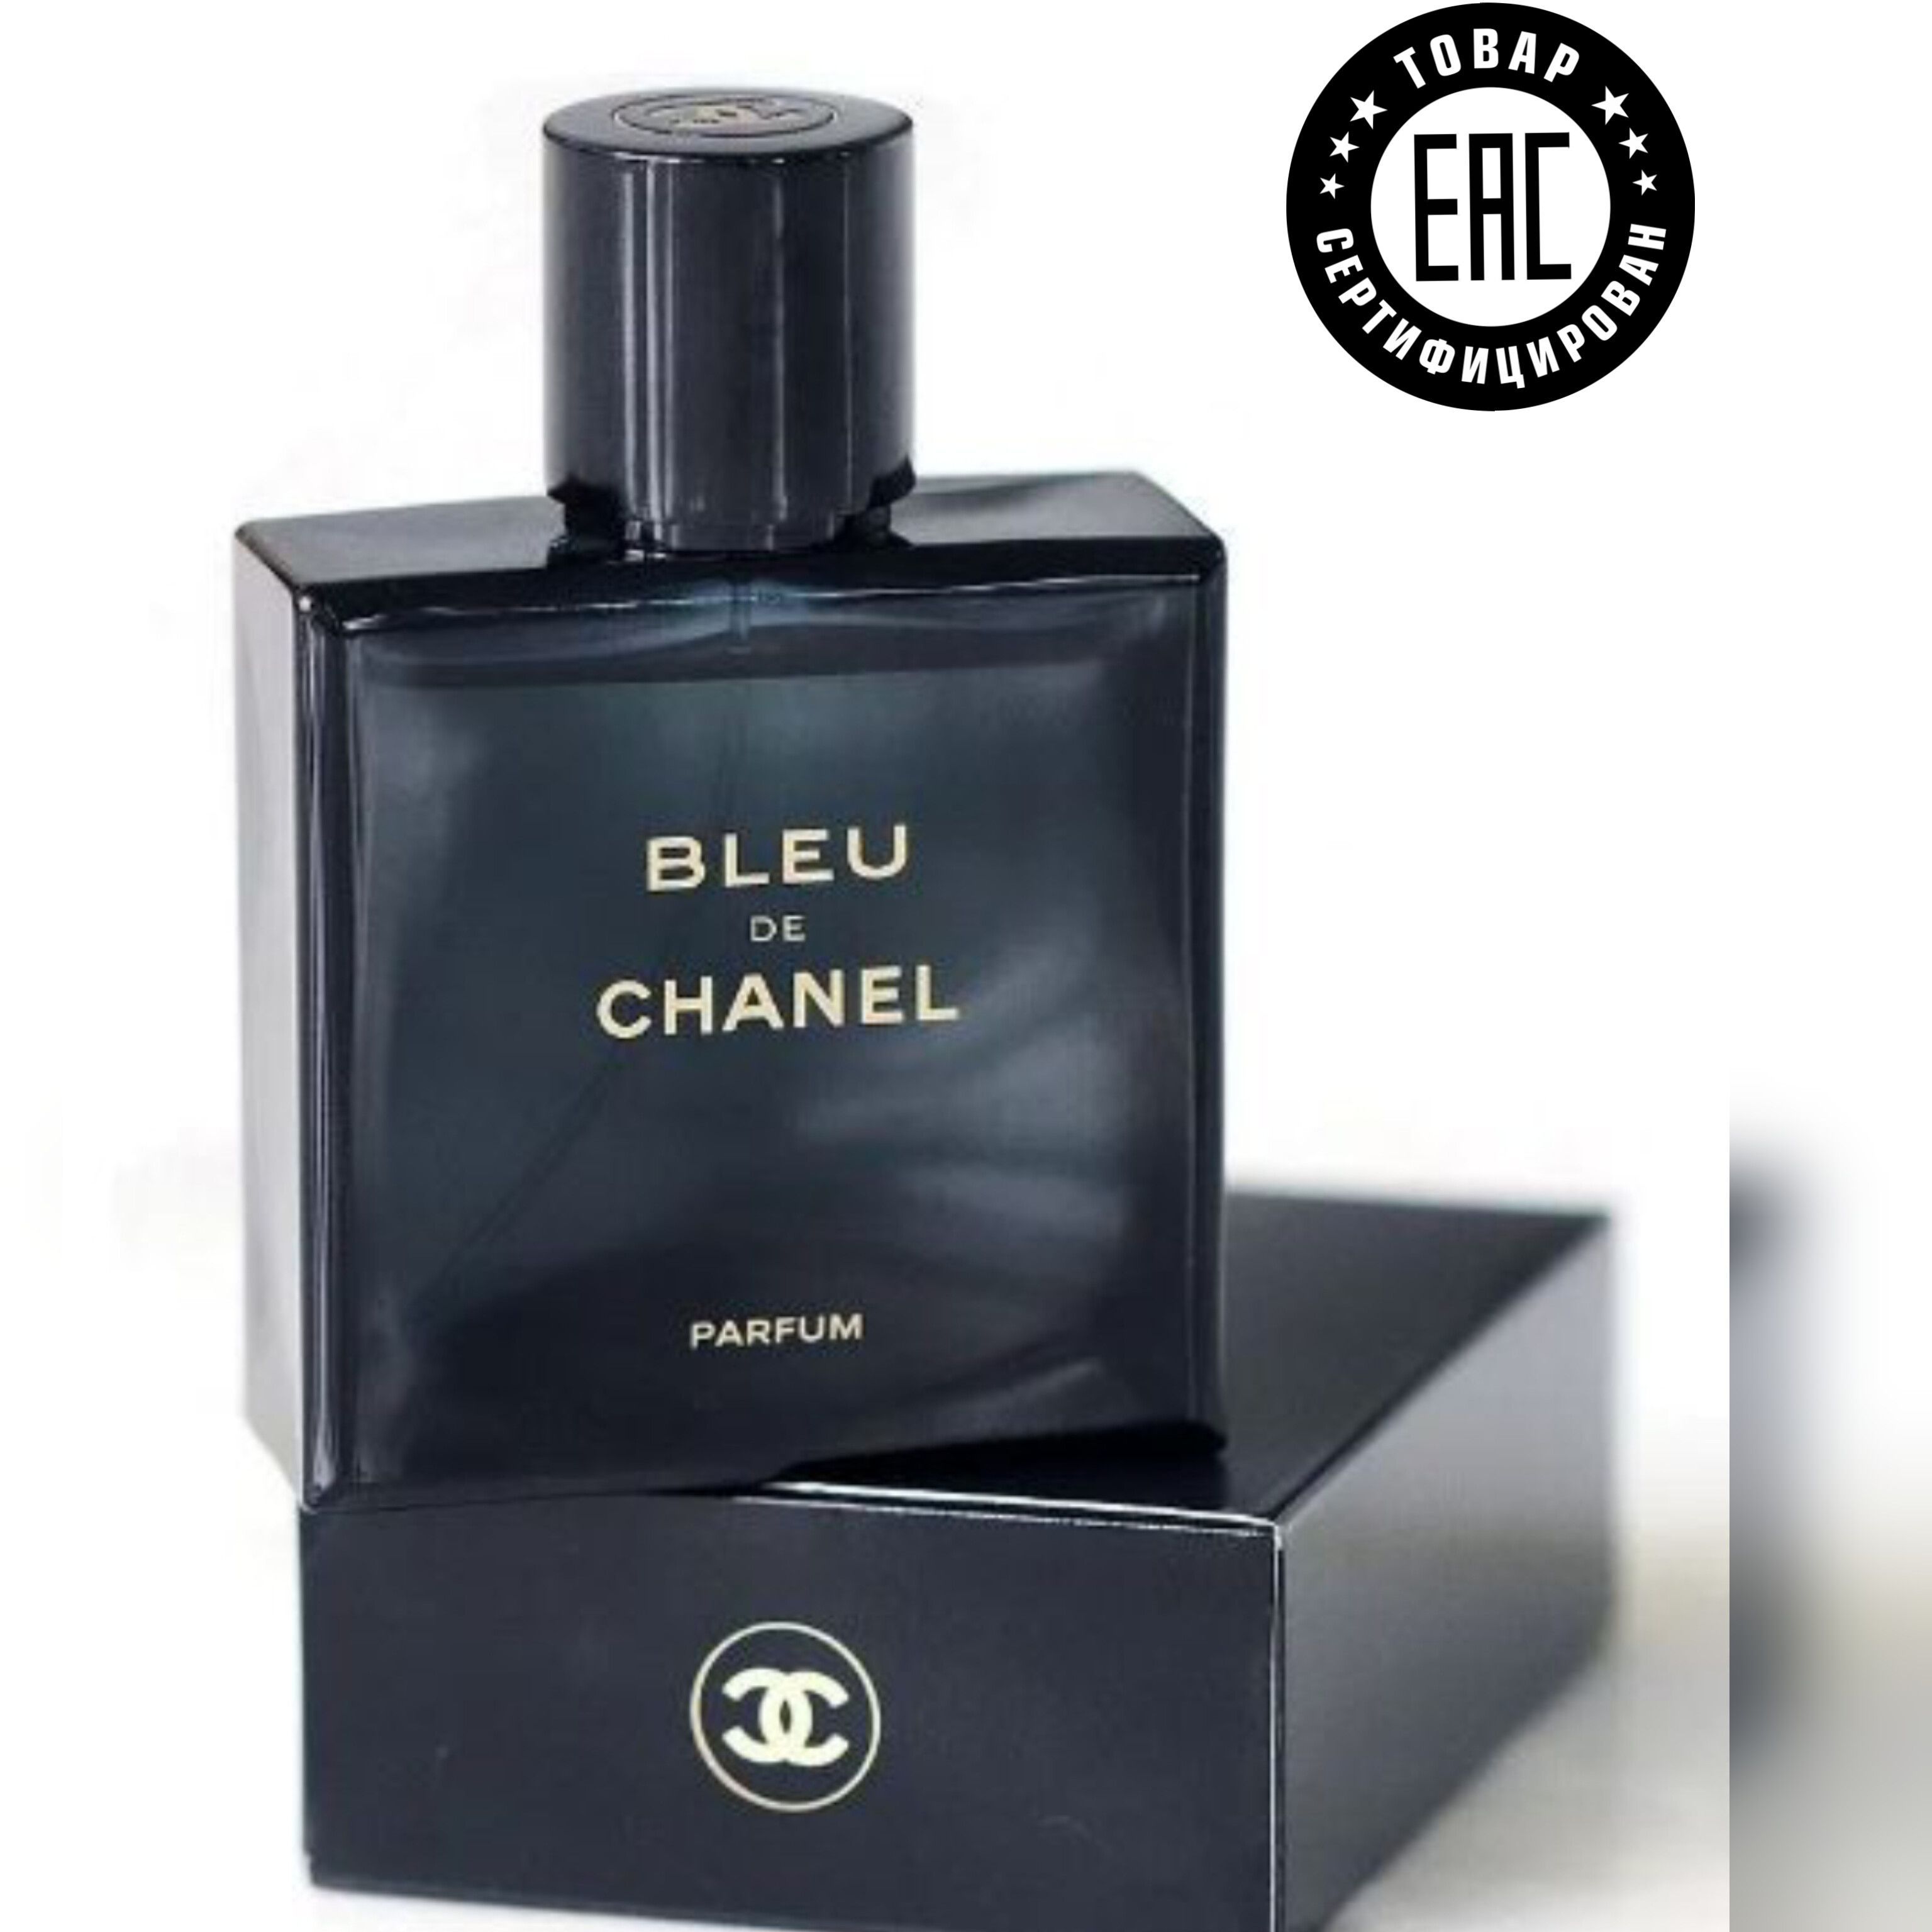 Название мужских парфюмов. Chanel bleu de Chanel Parfum 100 ml. Bleu de Chanel 100 мл. Блю де Шанель мужские парфюмерная вода 100 мл. Туалетная вода Chanel Blue de Шанель Блю 100 ml.